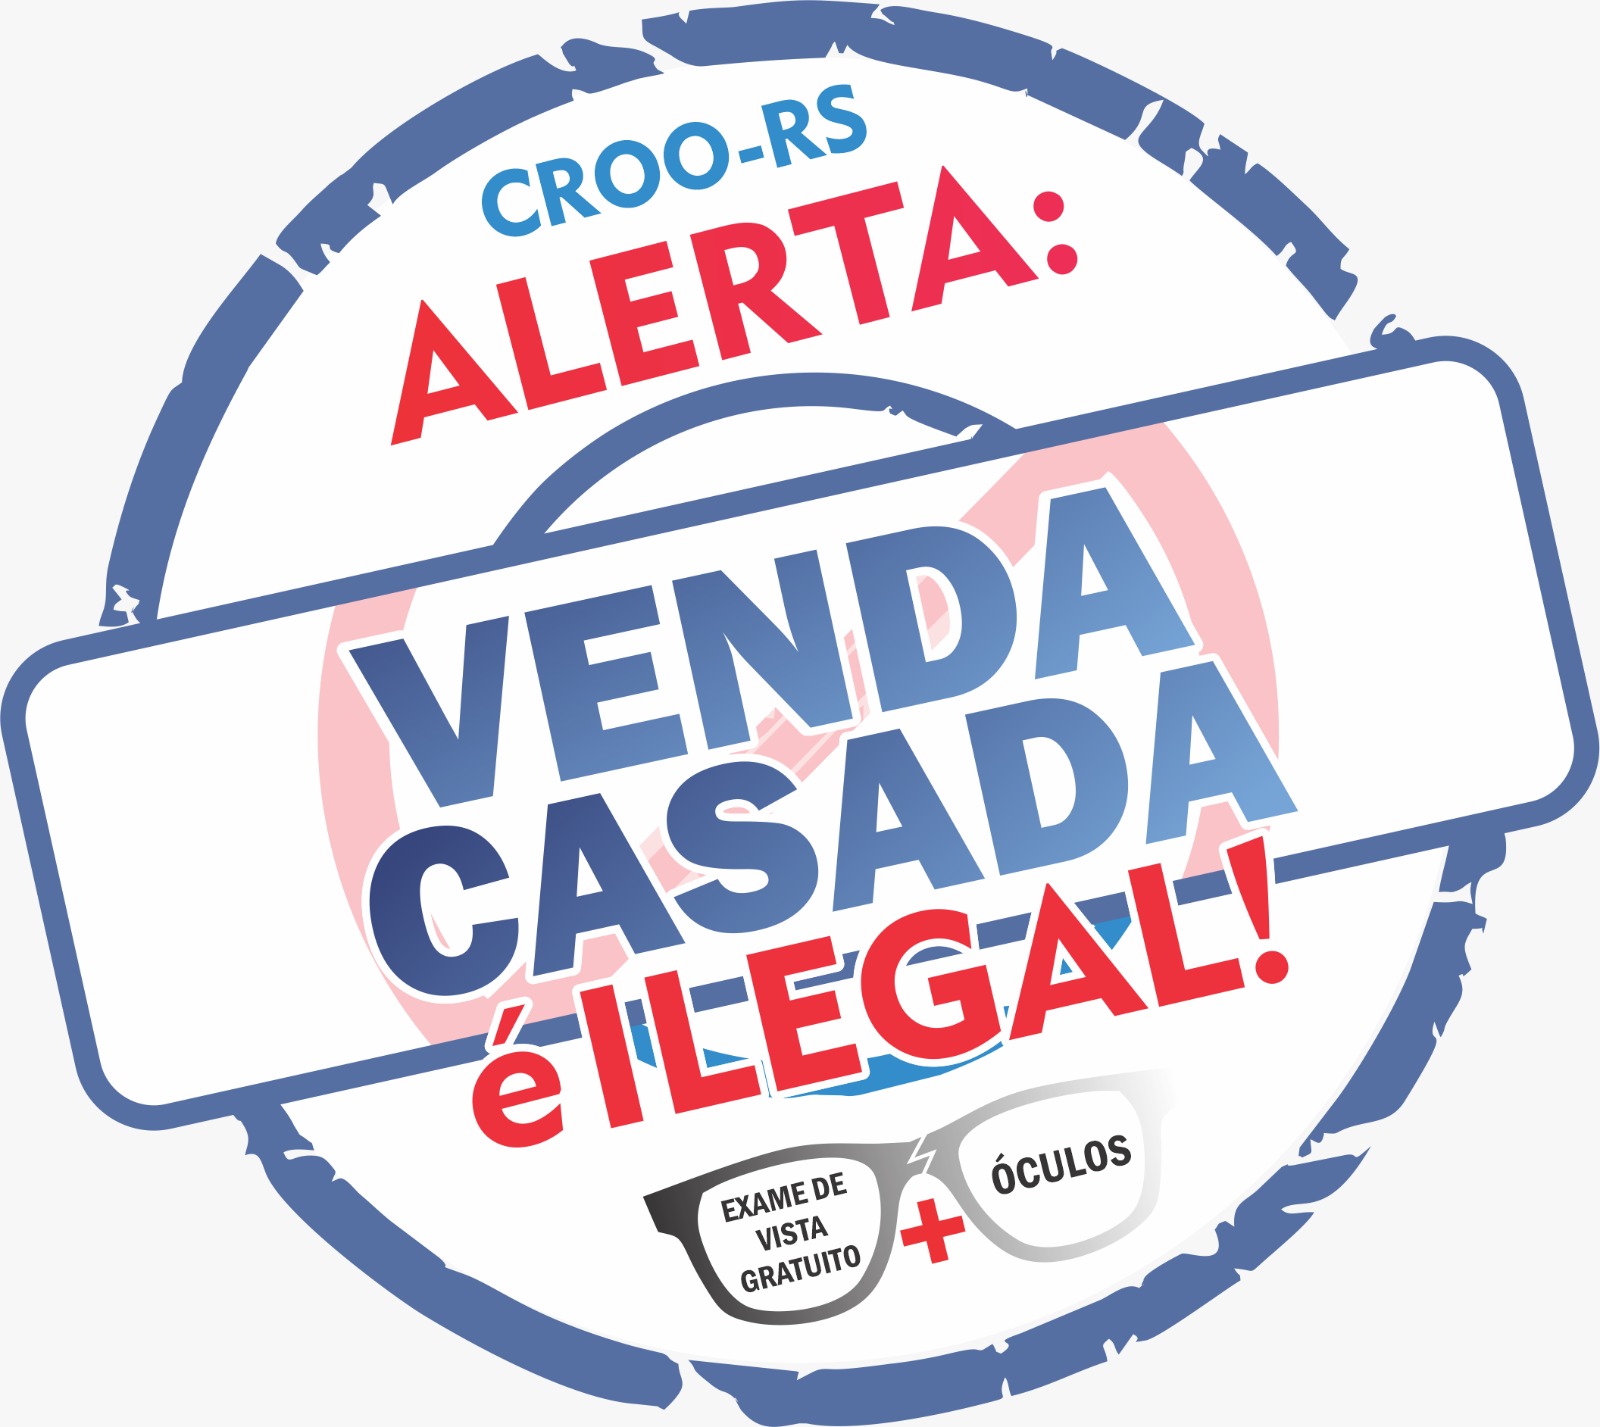 CROO-RS ALERTA: VENDA CASADA É ILEGAL